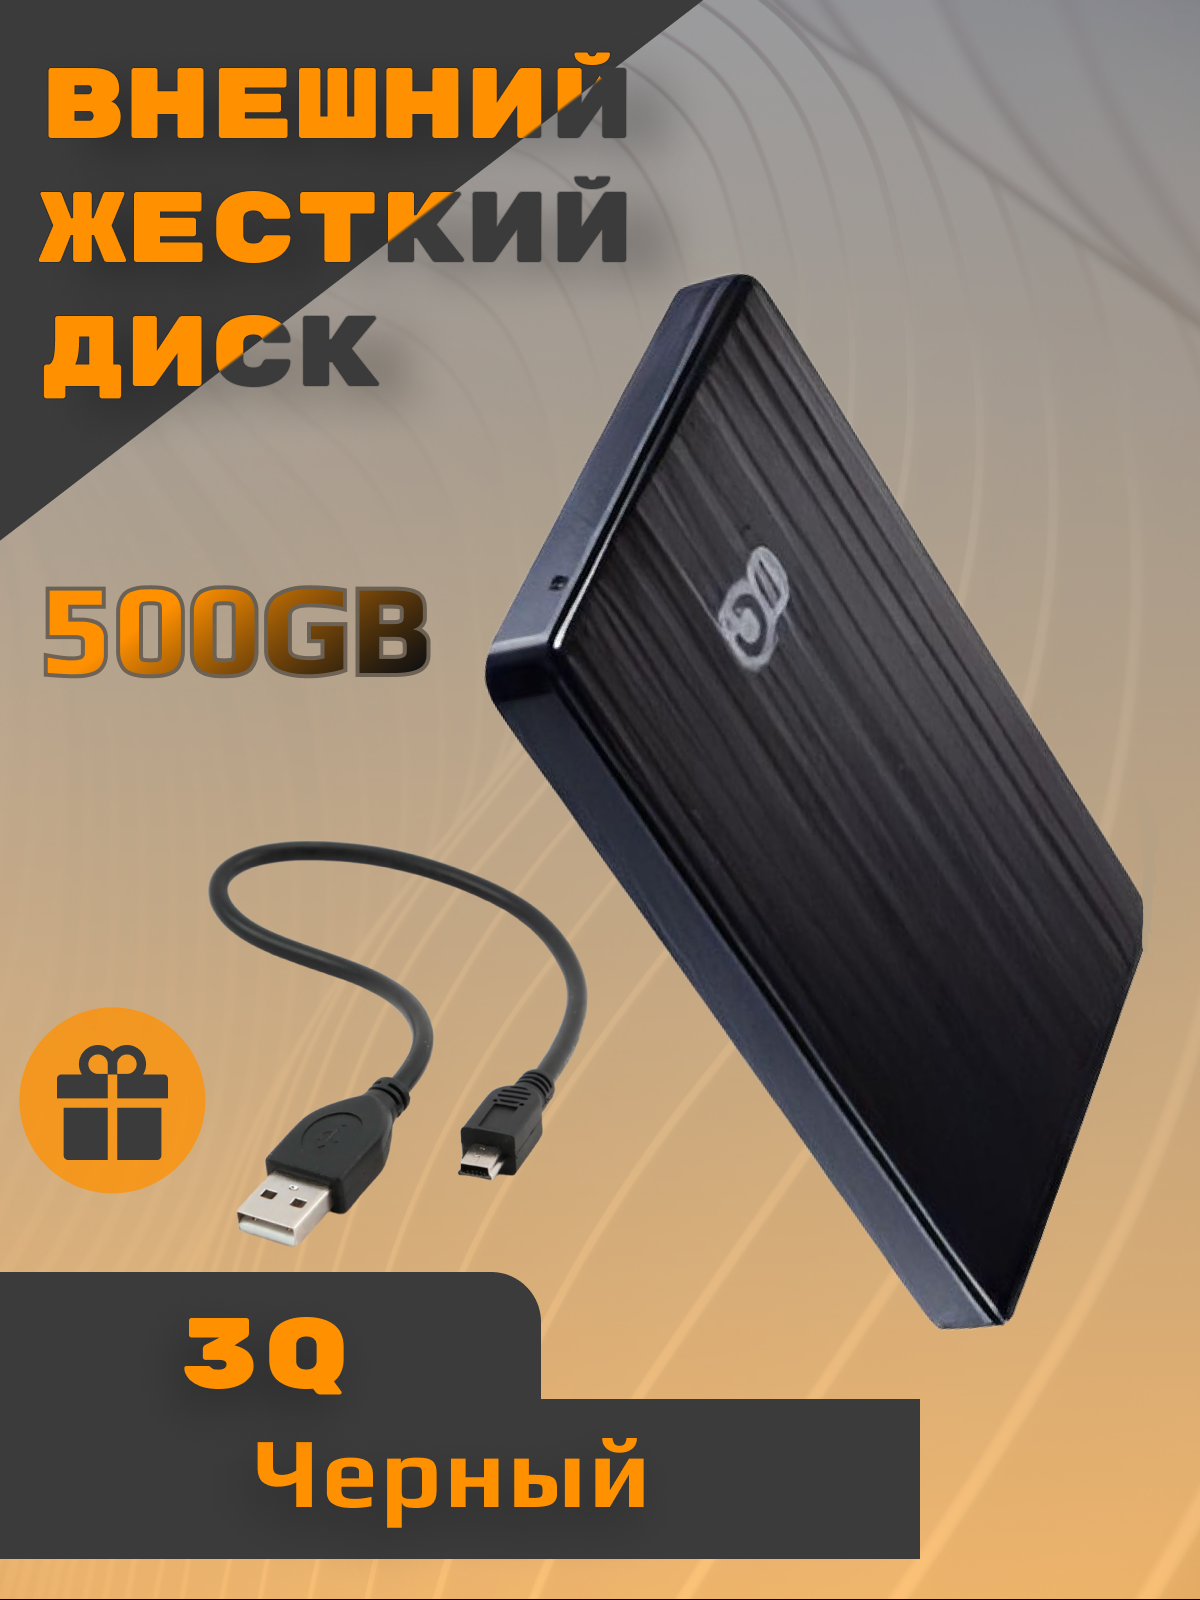 Внешний жесткий диск 3Q 3QHDD-U290M-BB5005 500 ГБ 3QHDD-U290M-BB5005, купить в Москве, цены в интернет-магазинах на Мегамаркет